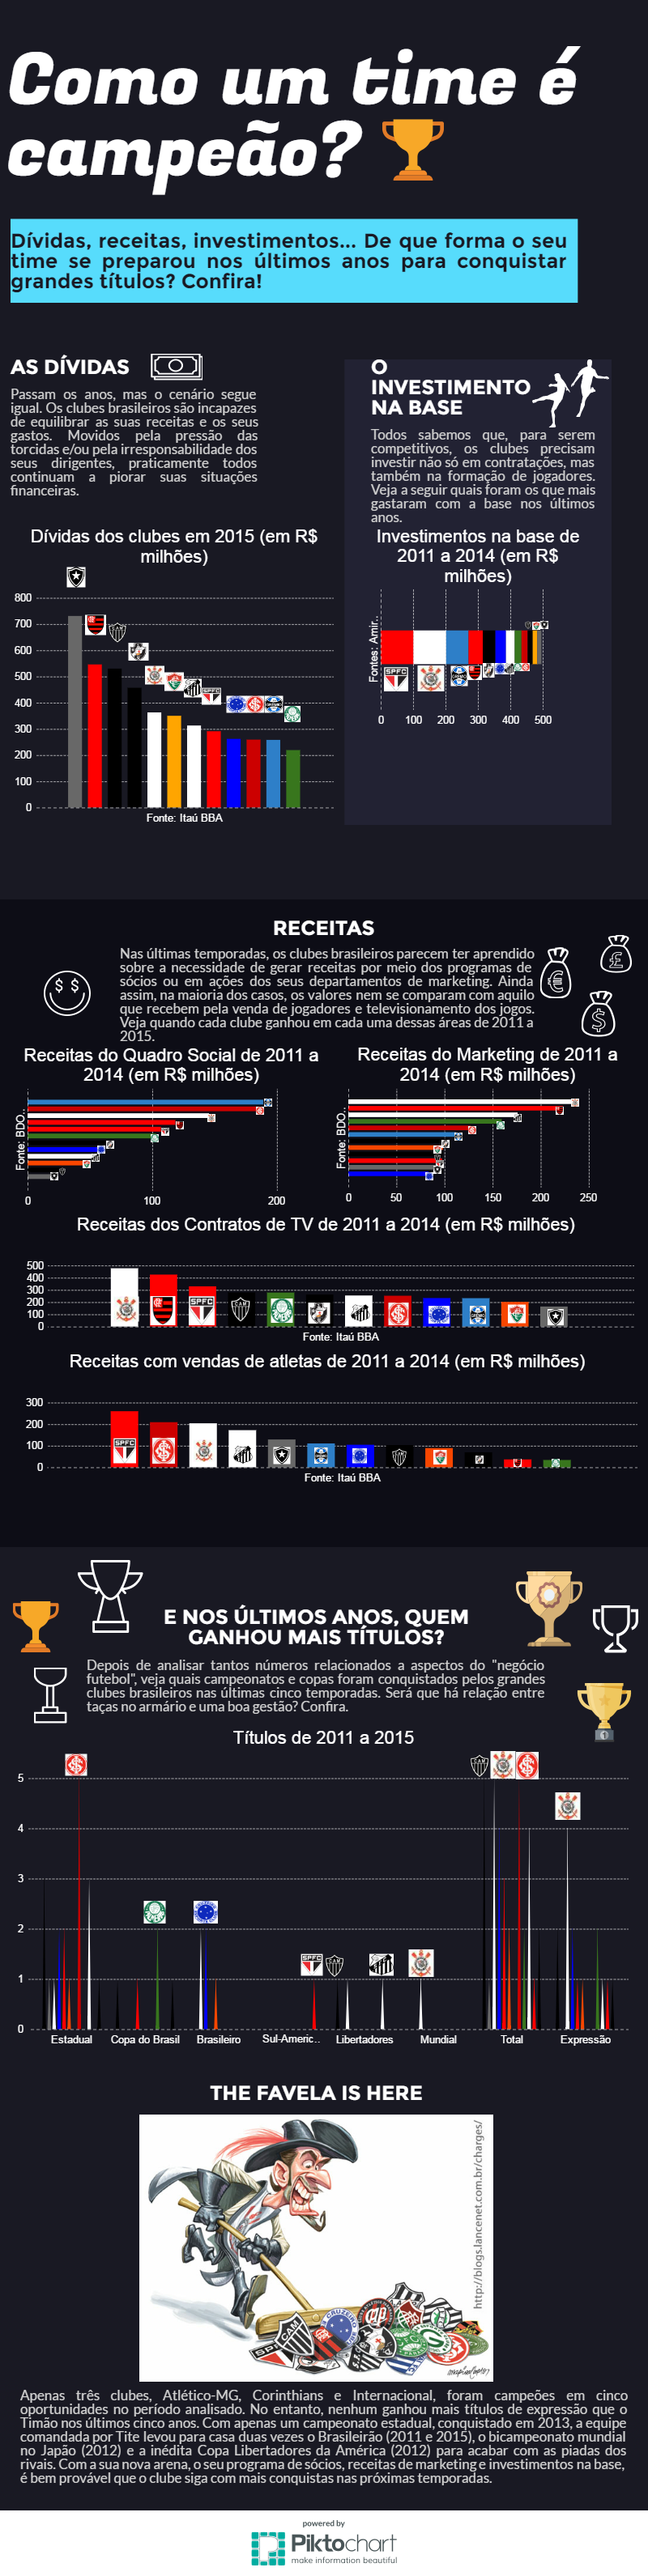 FUTEBOL: Final da Taça dos Libertadores 2016 infographic